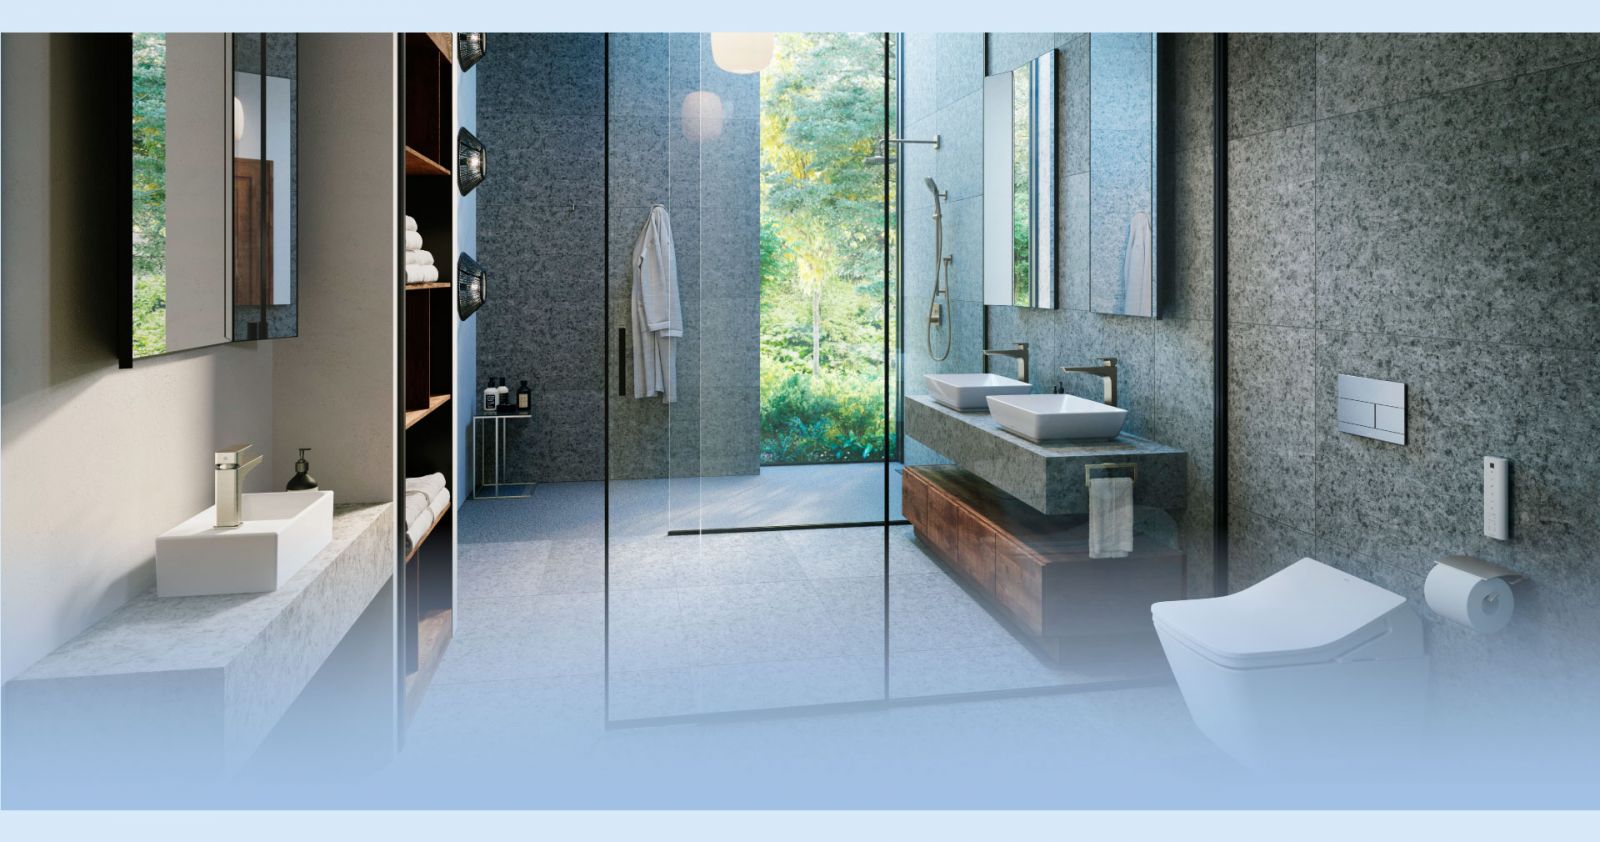 Thiết kế phòng tắm Toto - không gian đậm chất cổ điển với đường nét tinh tế và sang trọng. Với sự kết hợp giữa công nghệ và trải nghiệm người dùng, phòng tắm của bạn sẽ trở nên hoàn hảo hơn bao giờ hết với sản phẩm của Toto.